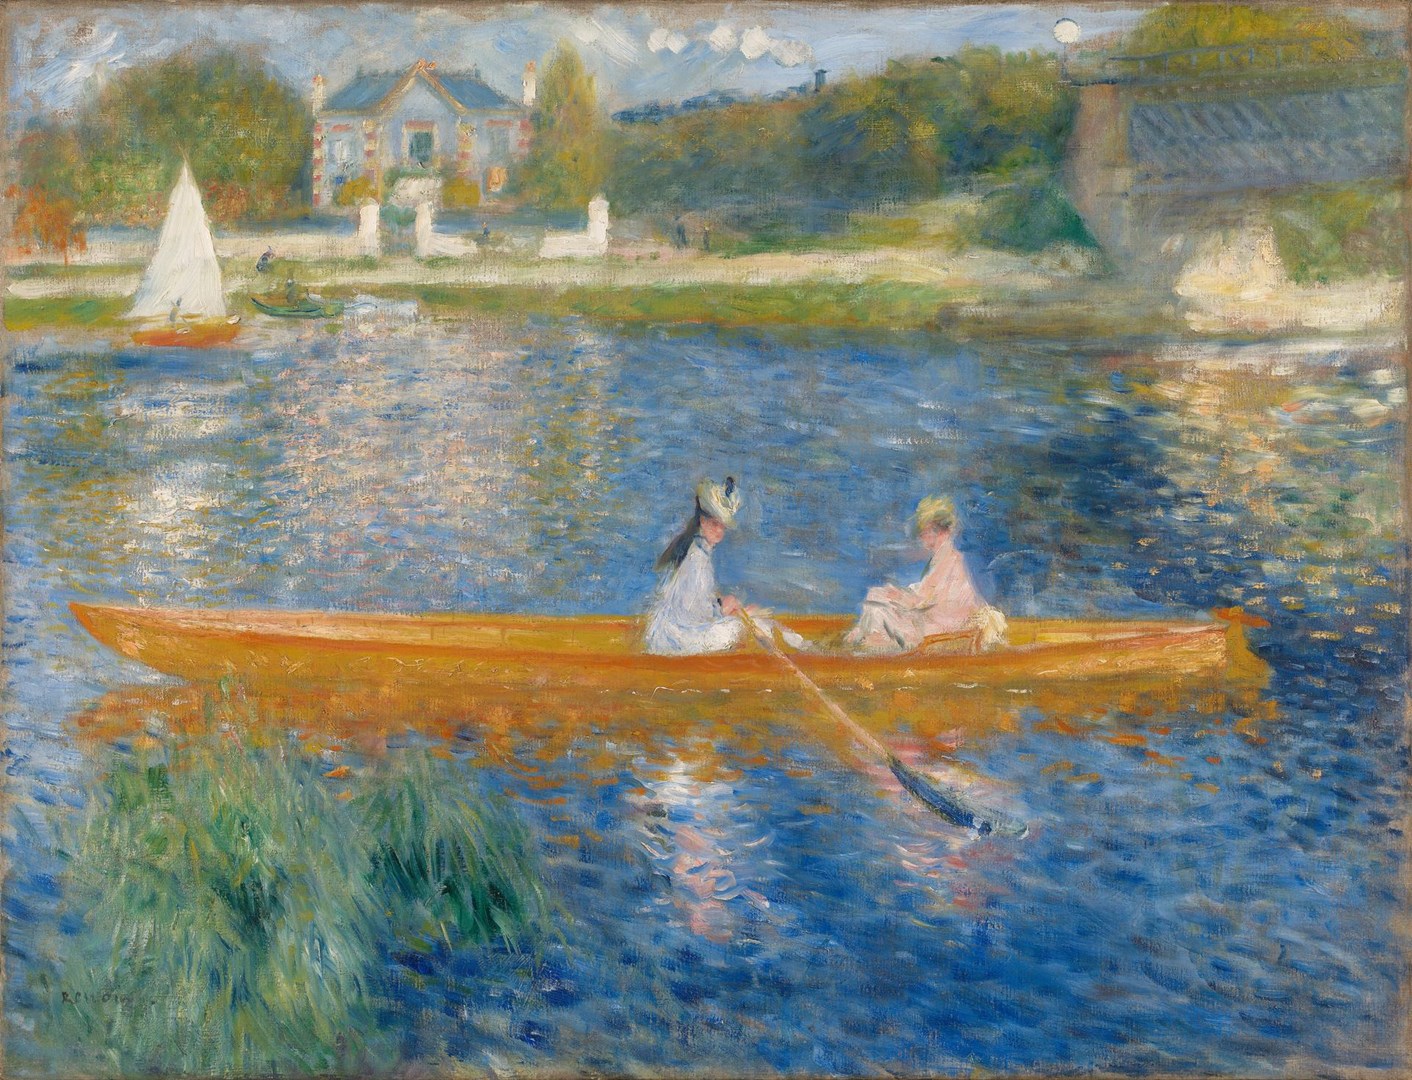 Скіф (La Yole) by Pierre-Auguste Renoir - 1875 - 71 x 92 см 